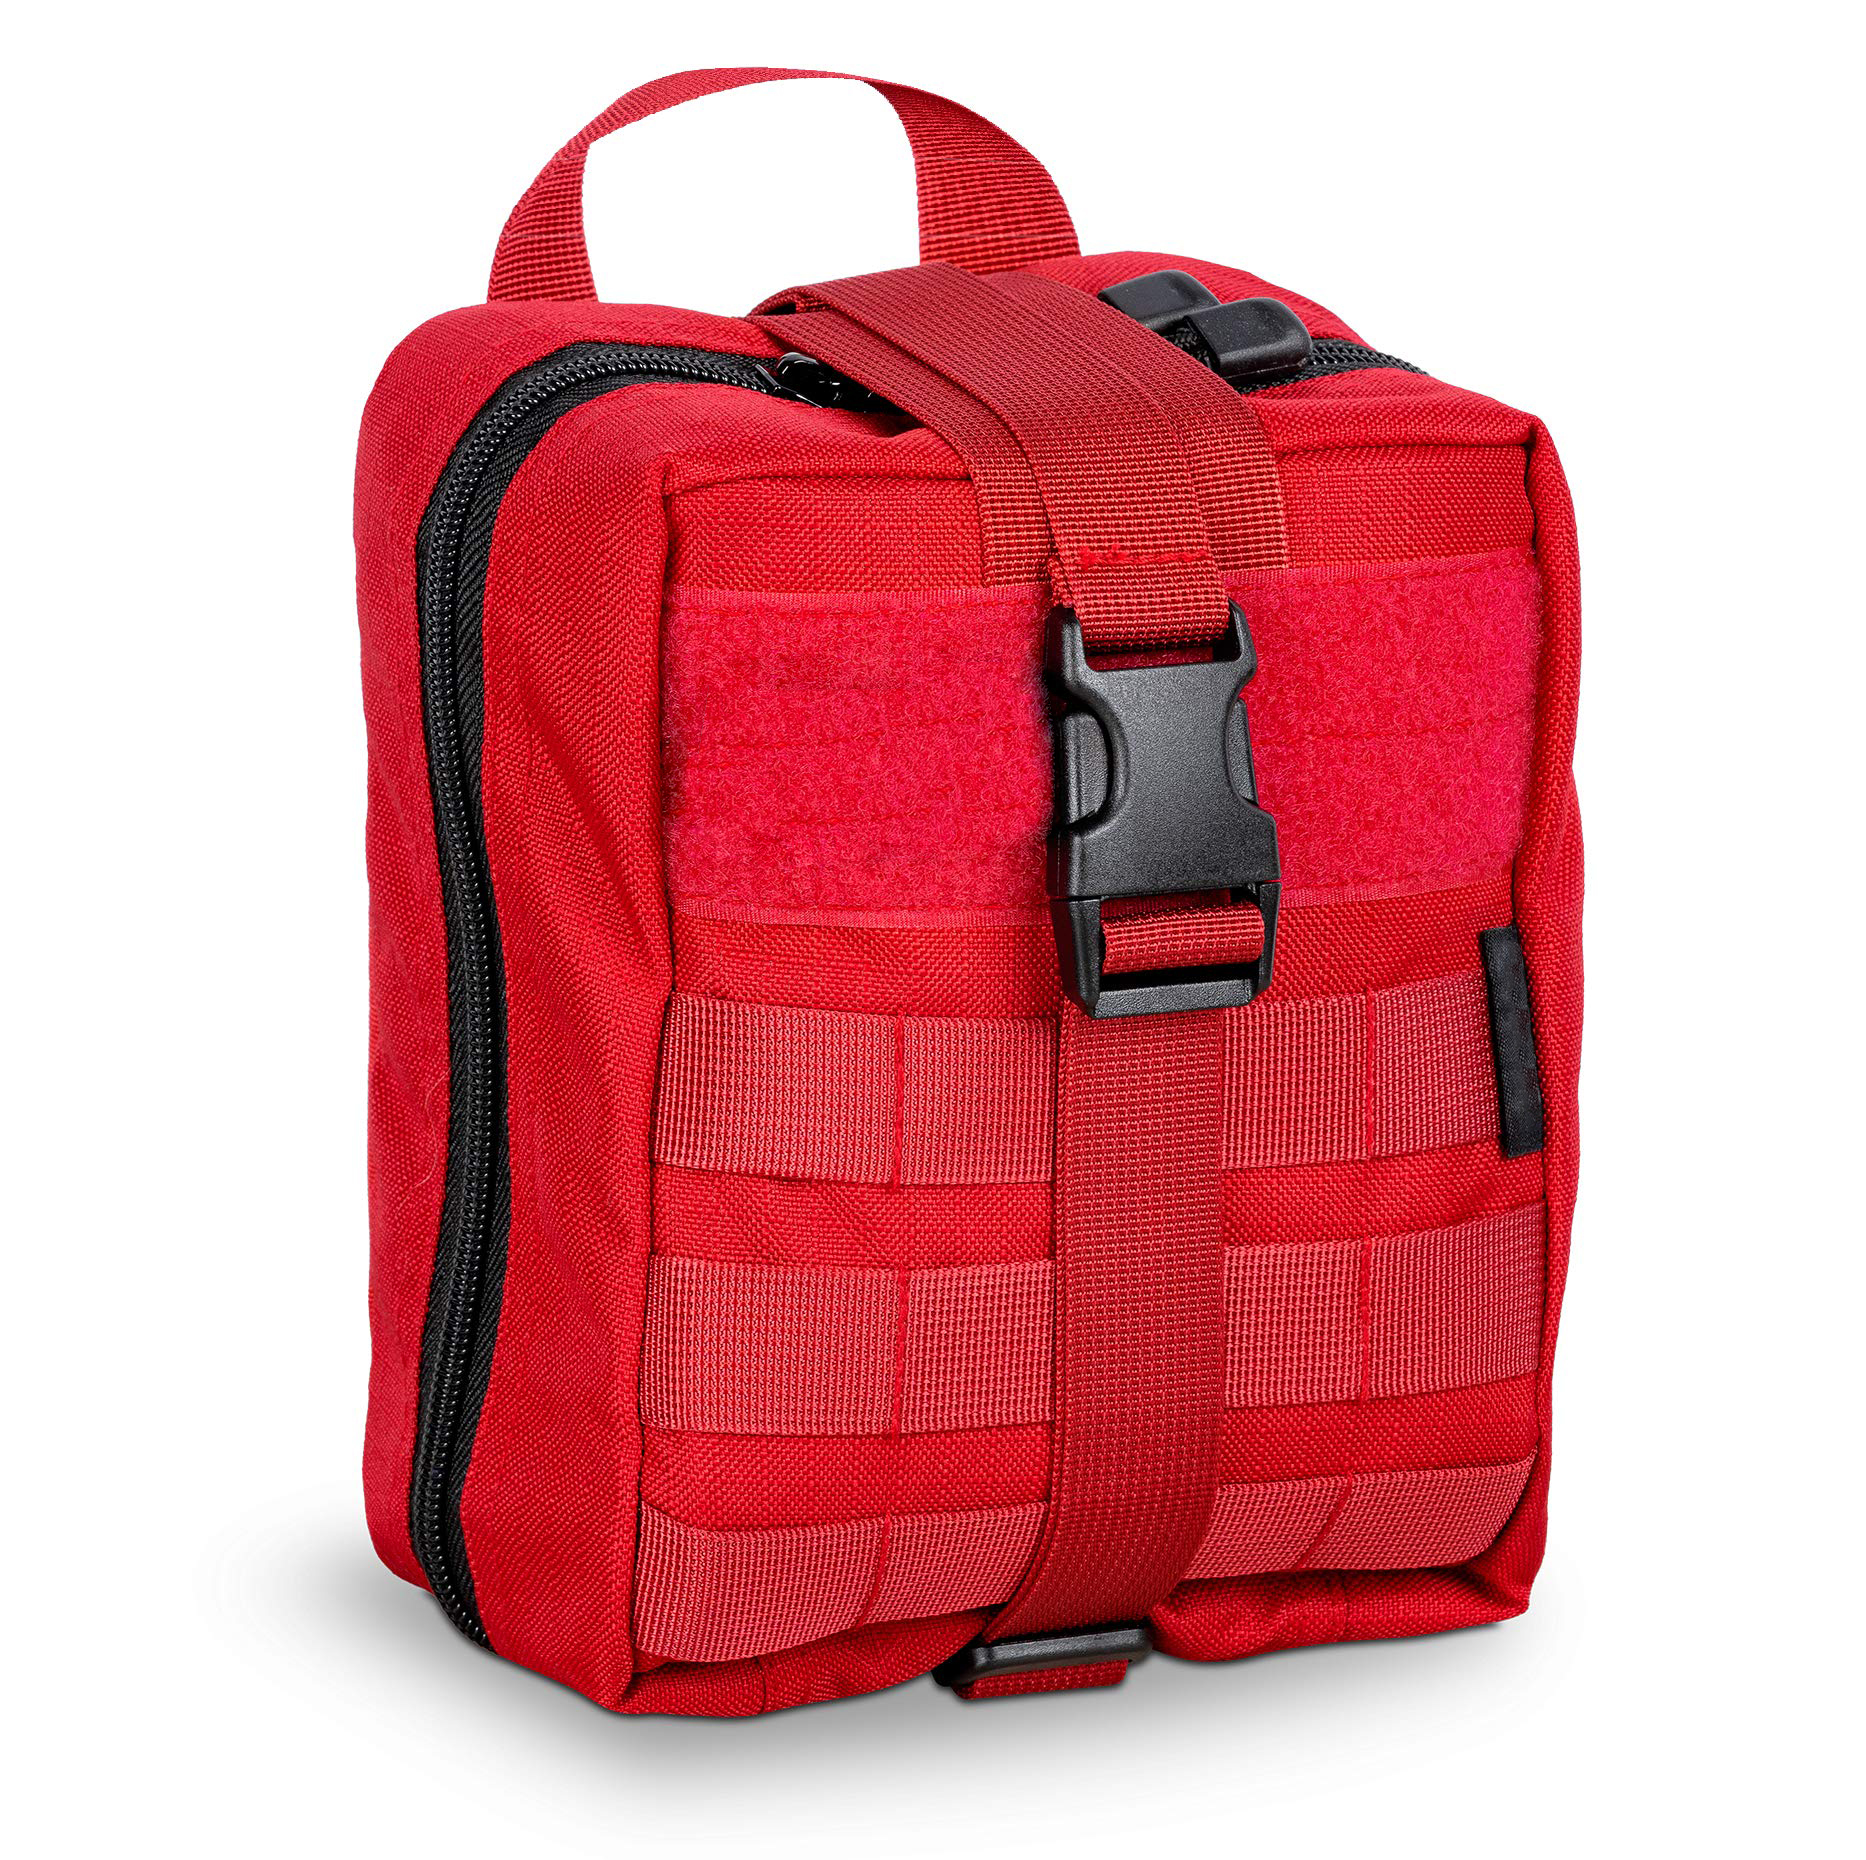 Den nye holdbare og praktiske medicinske taske er praktisk og har høj kapacitet